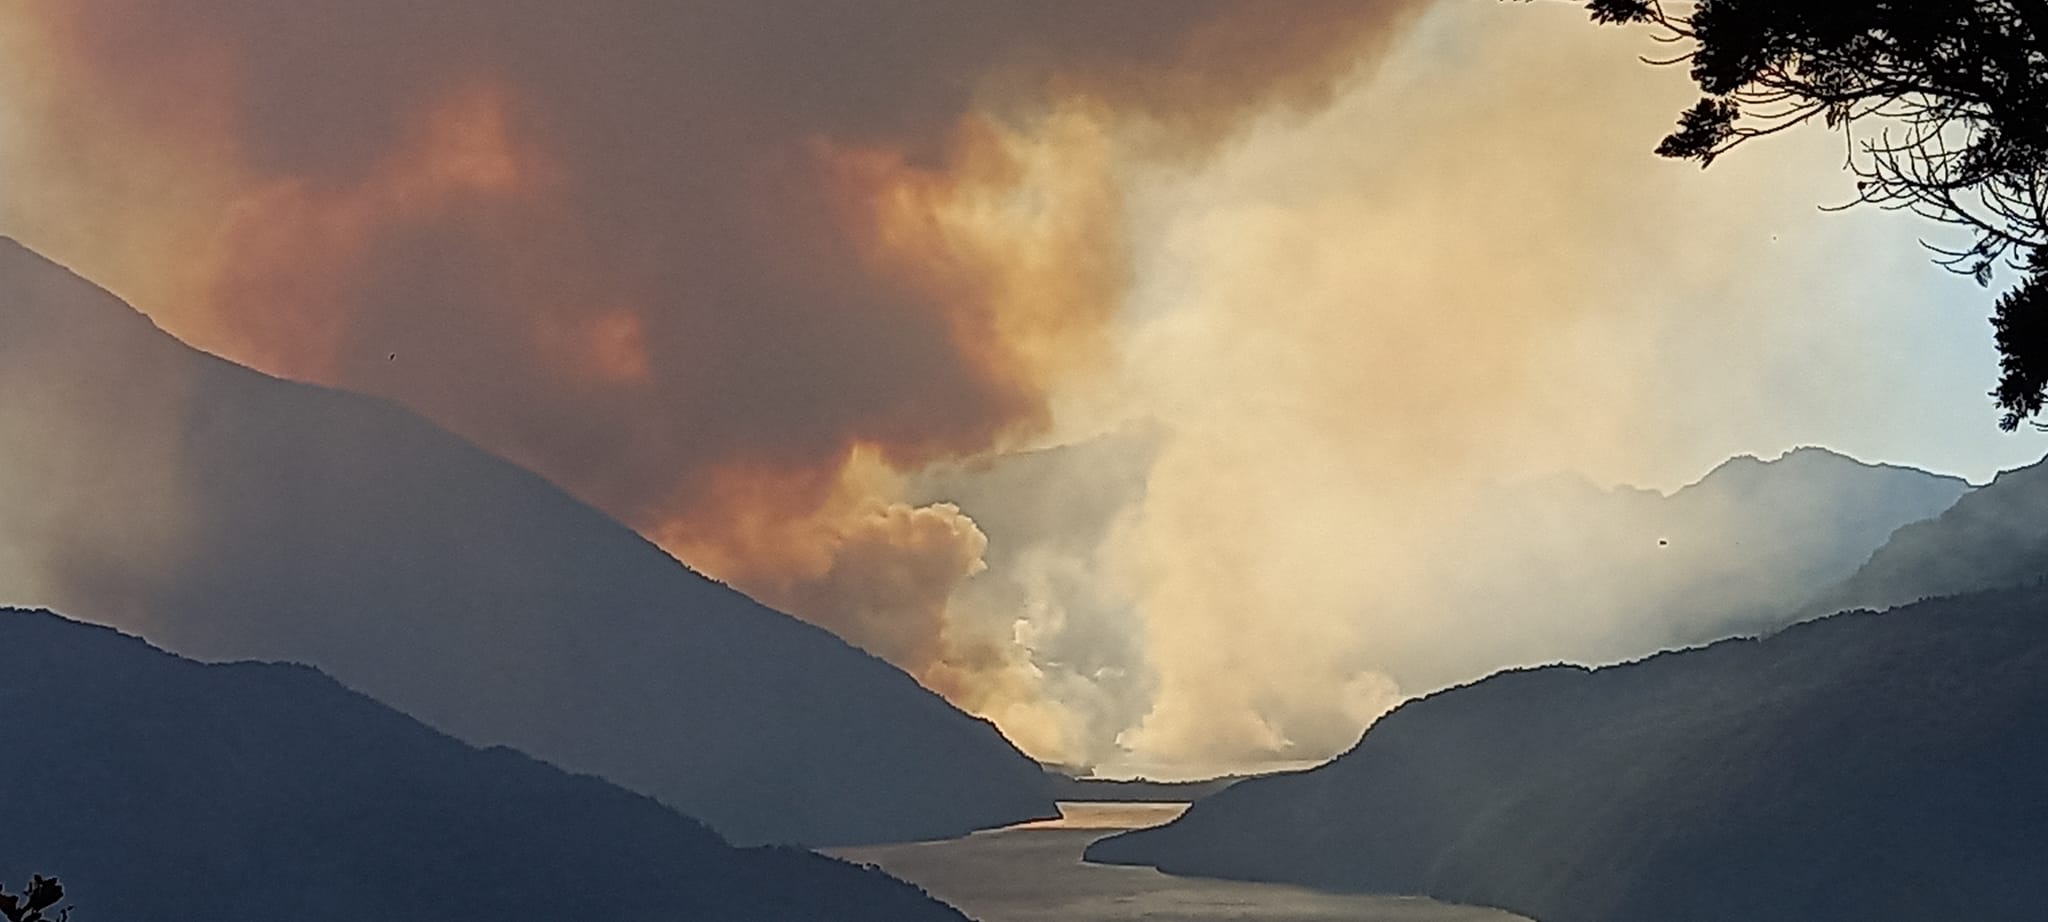 El fuego avanza por el cerro Santa Elena hacia el lago Steffen impulsado por los vientos y las altas temperaturas. (Foto gentileza Rubén Figueroa)